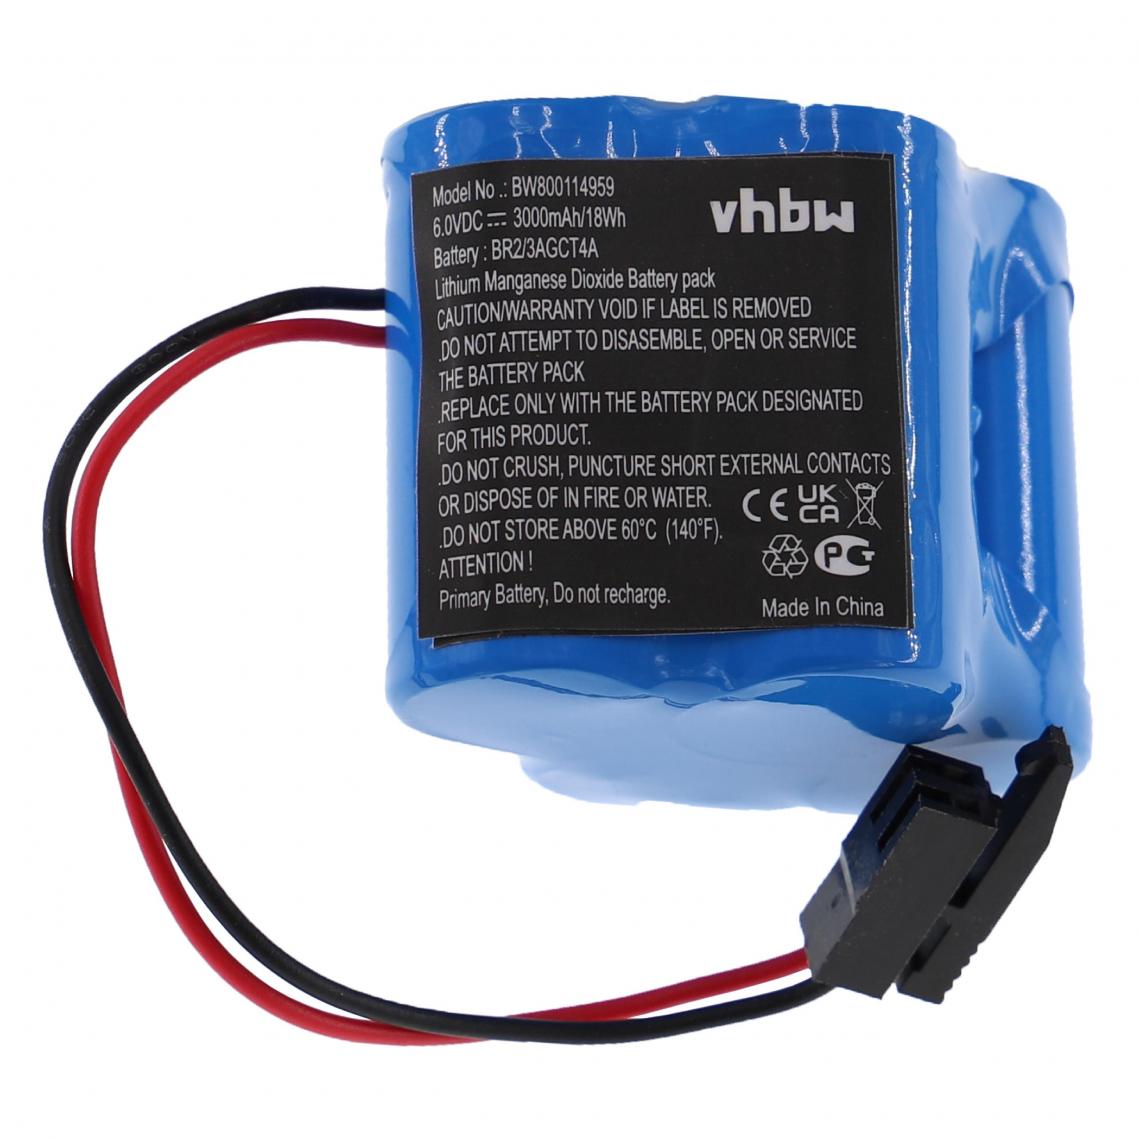 Vhbw - vhbw Pile compatible avec Allen Bradley MicroLogix 1500, SLC-500 système de contrôle (3000mAh, 6V, Li-MnO2) - Alimentation modulaire